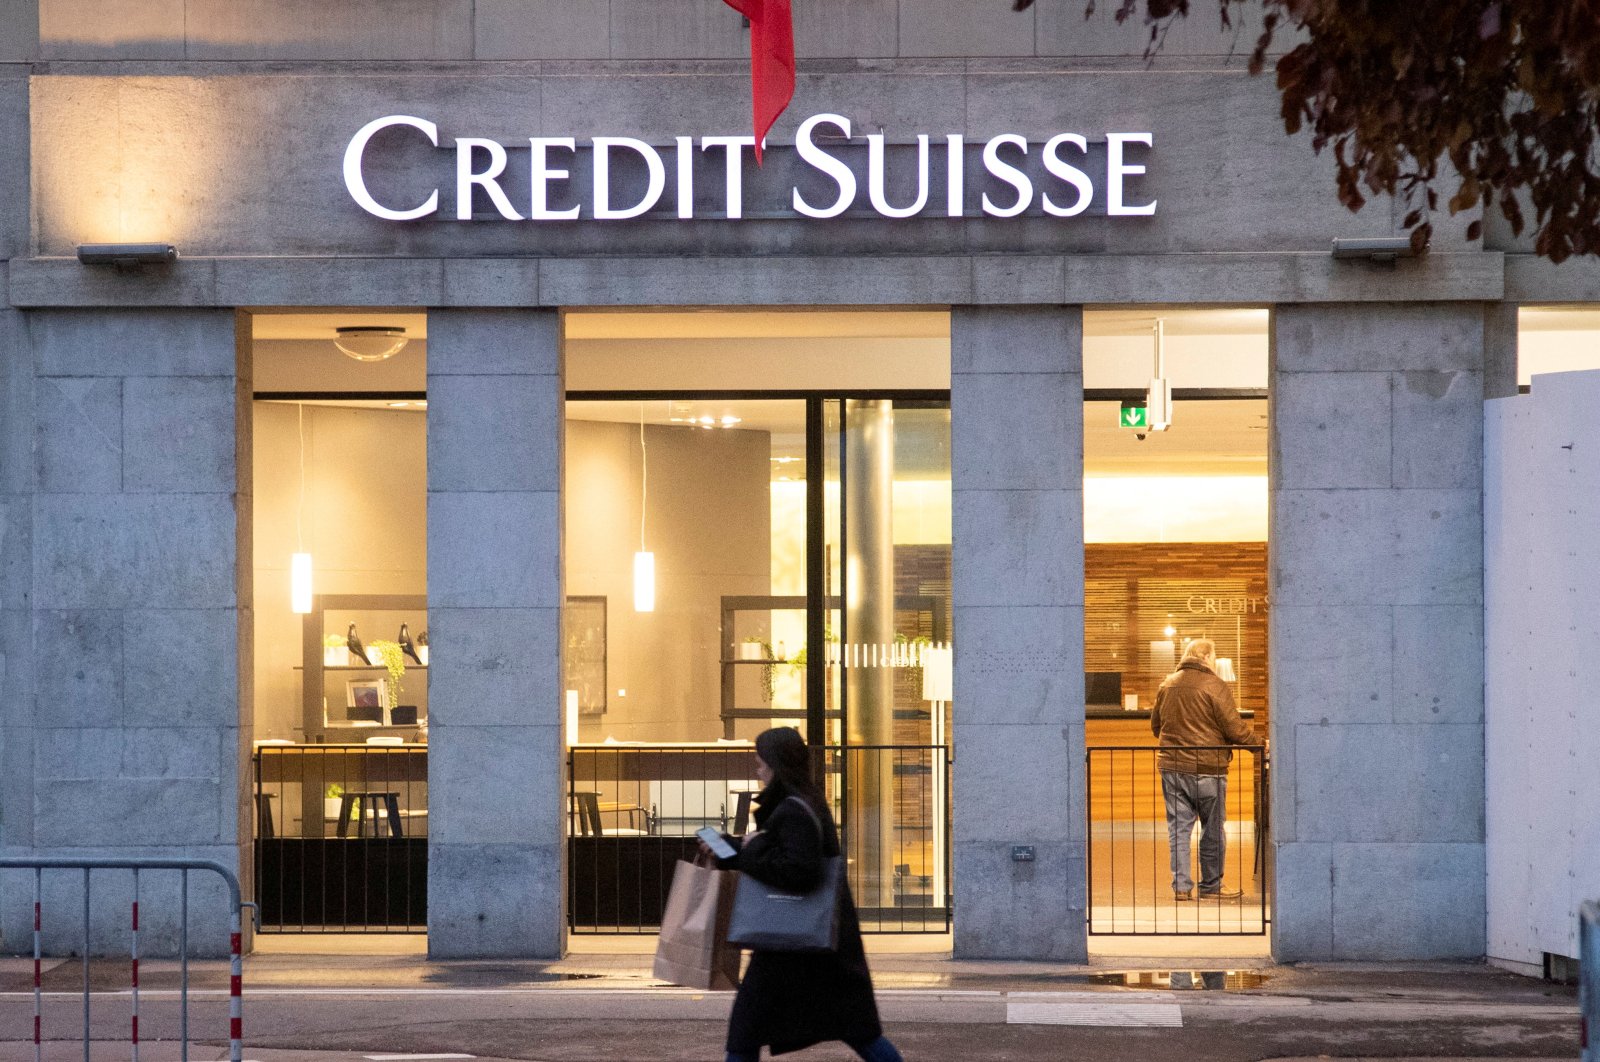 Kejaksaan Swiss meluncurkan kasus atas kebocoran data uang kotor Credit Suisse